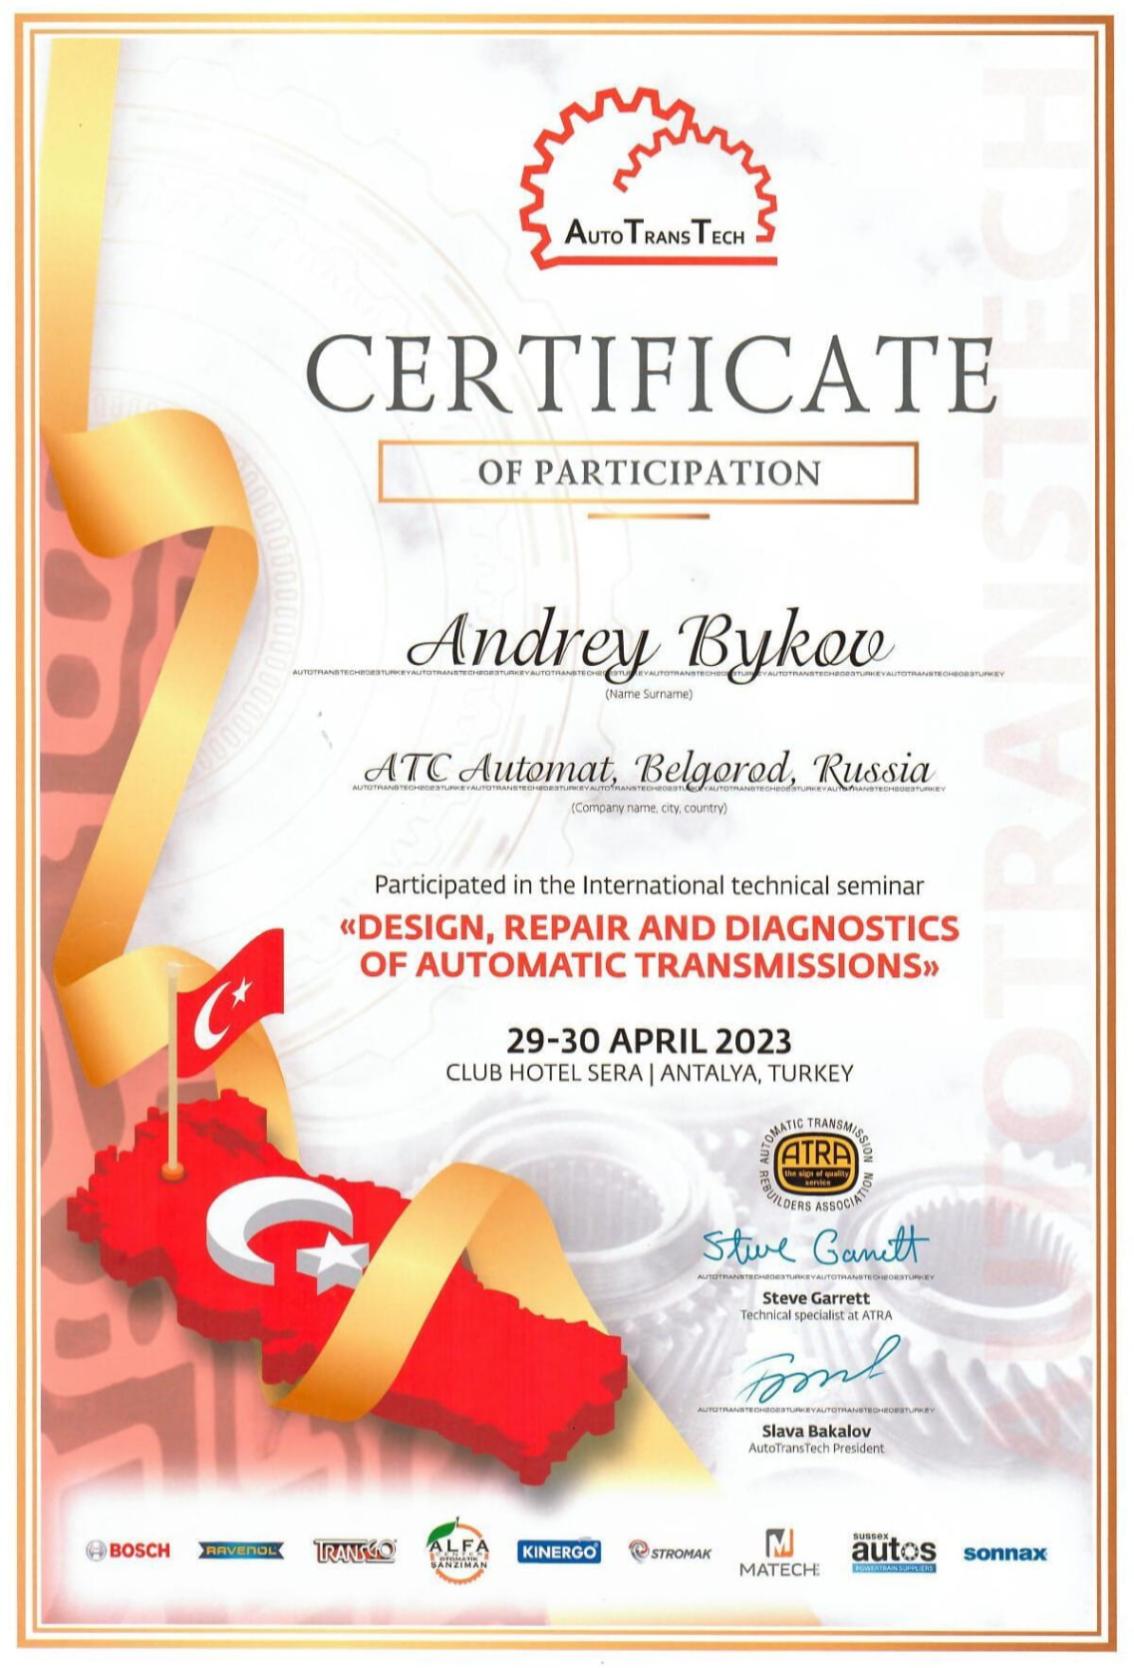 Сертификат участника в семинаре «DESIGN, REPAIR AND DIAGNOSTICS OF AUTOMATIC TRANSMISSIONS» 2023 г